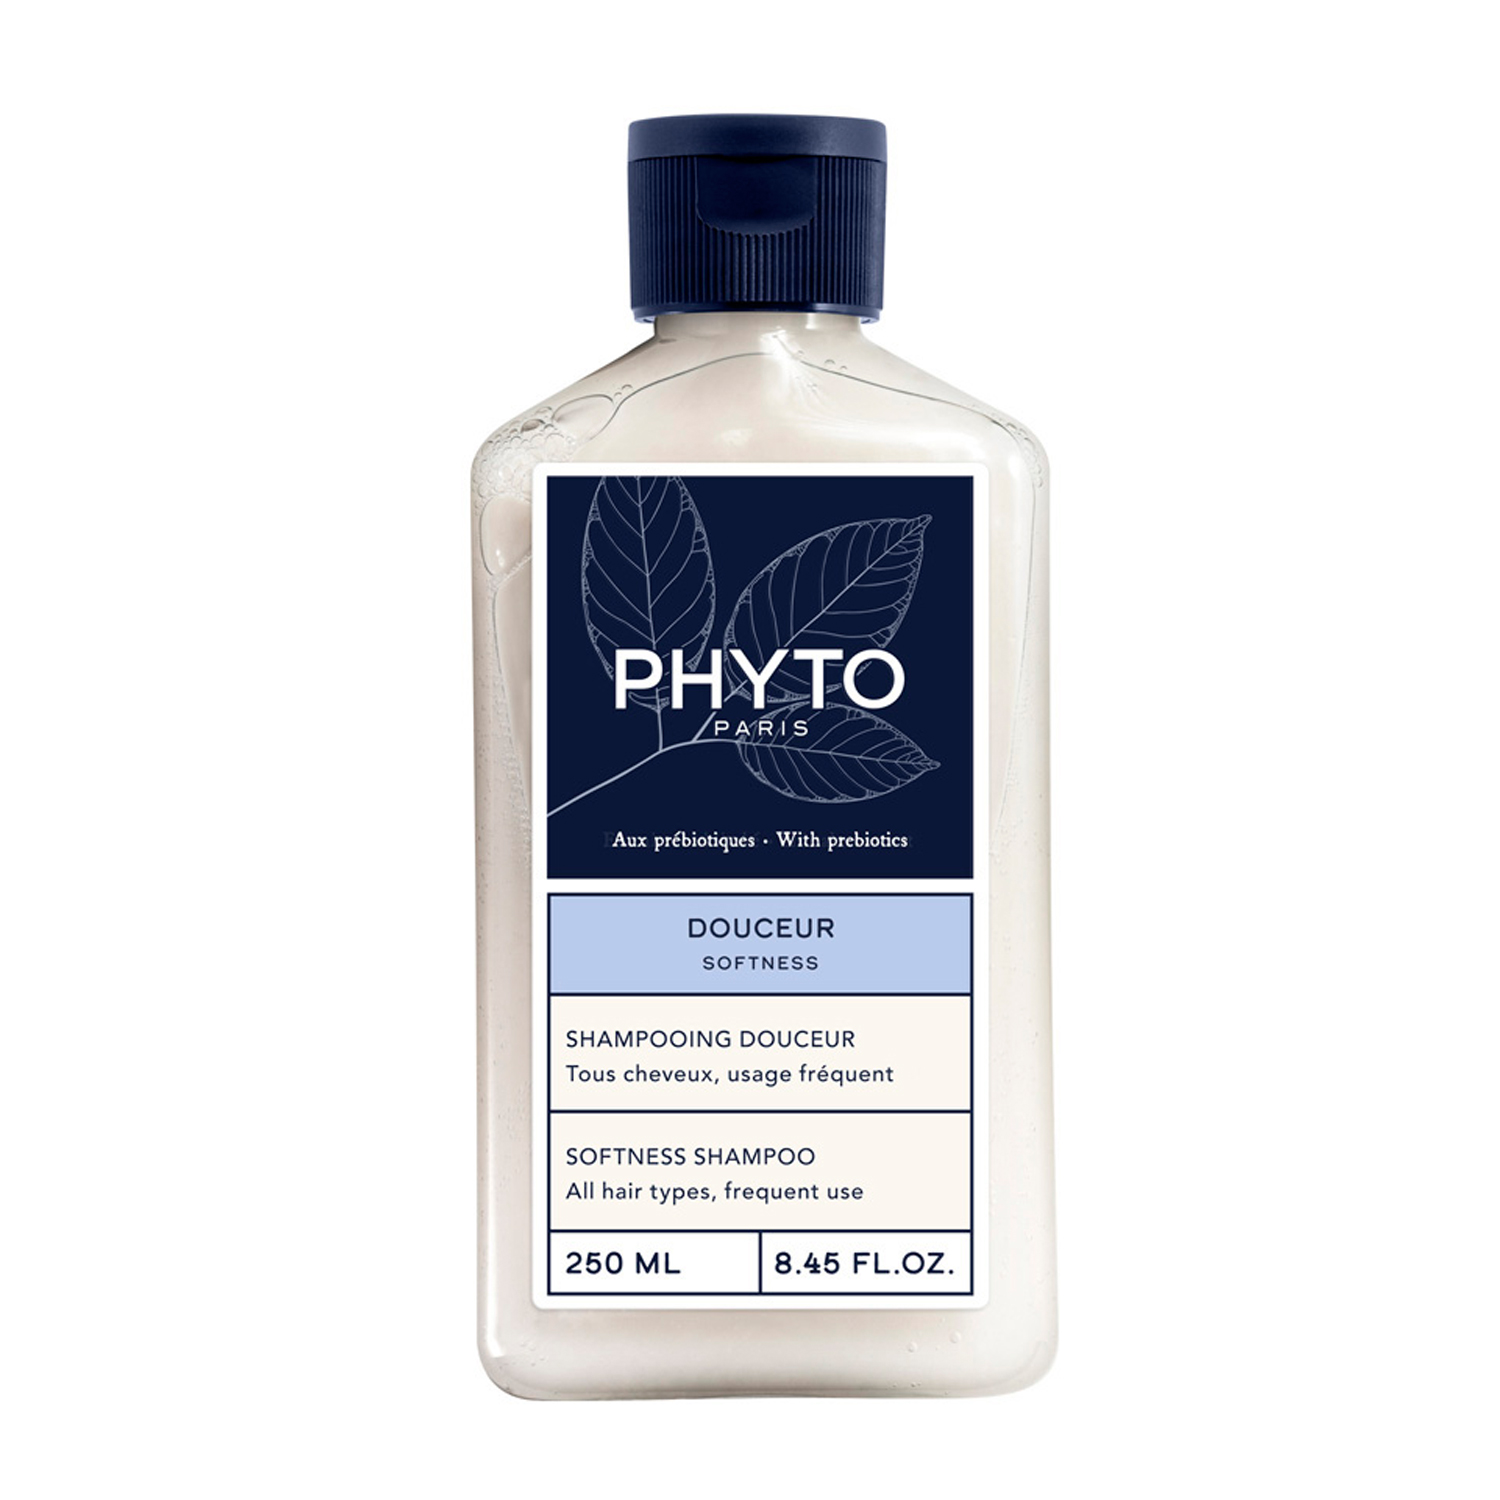 PHYTO SOFTNESS смягчающий шампунь для волос 250мл phyto softness смягчающий шампунь для волос 250мл